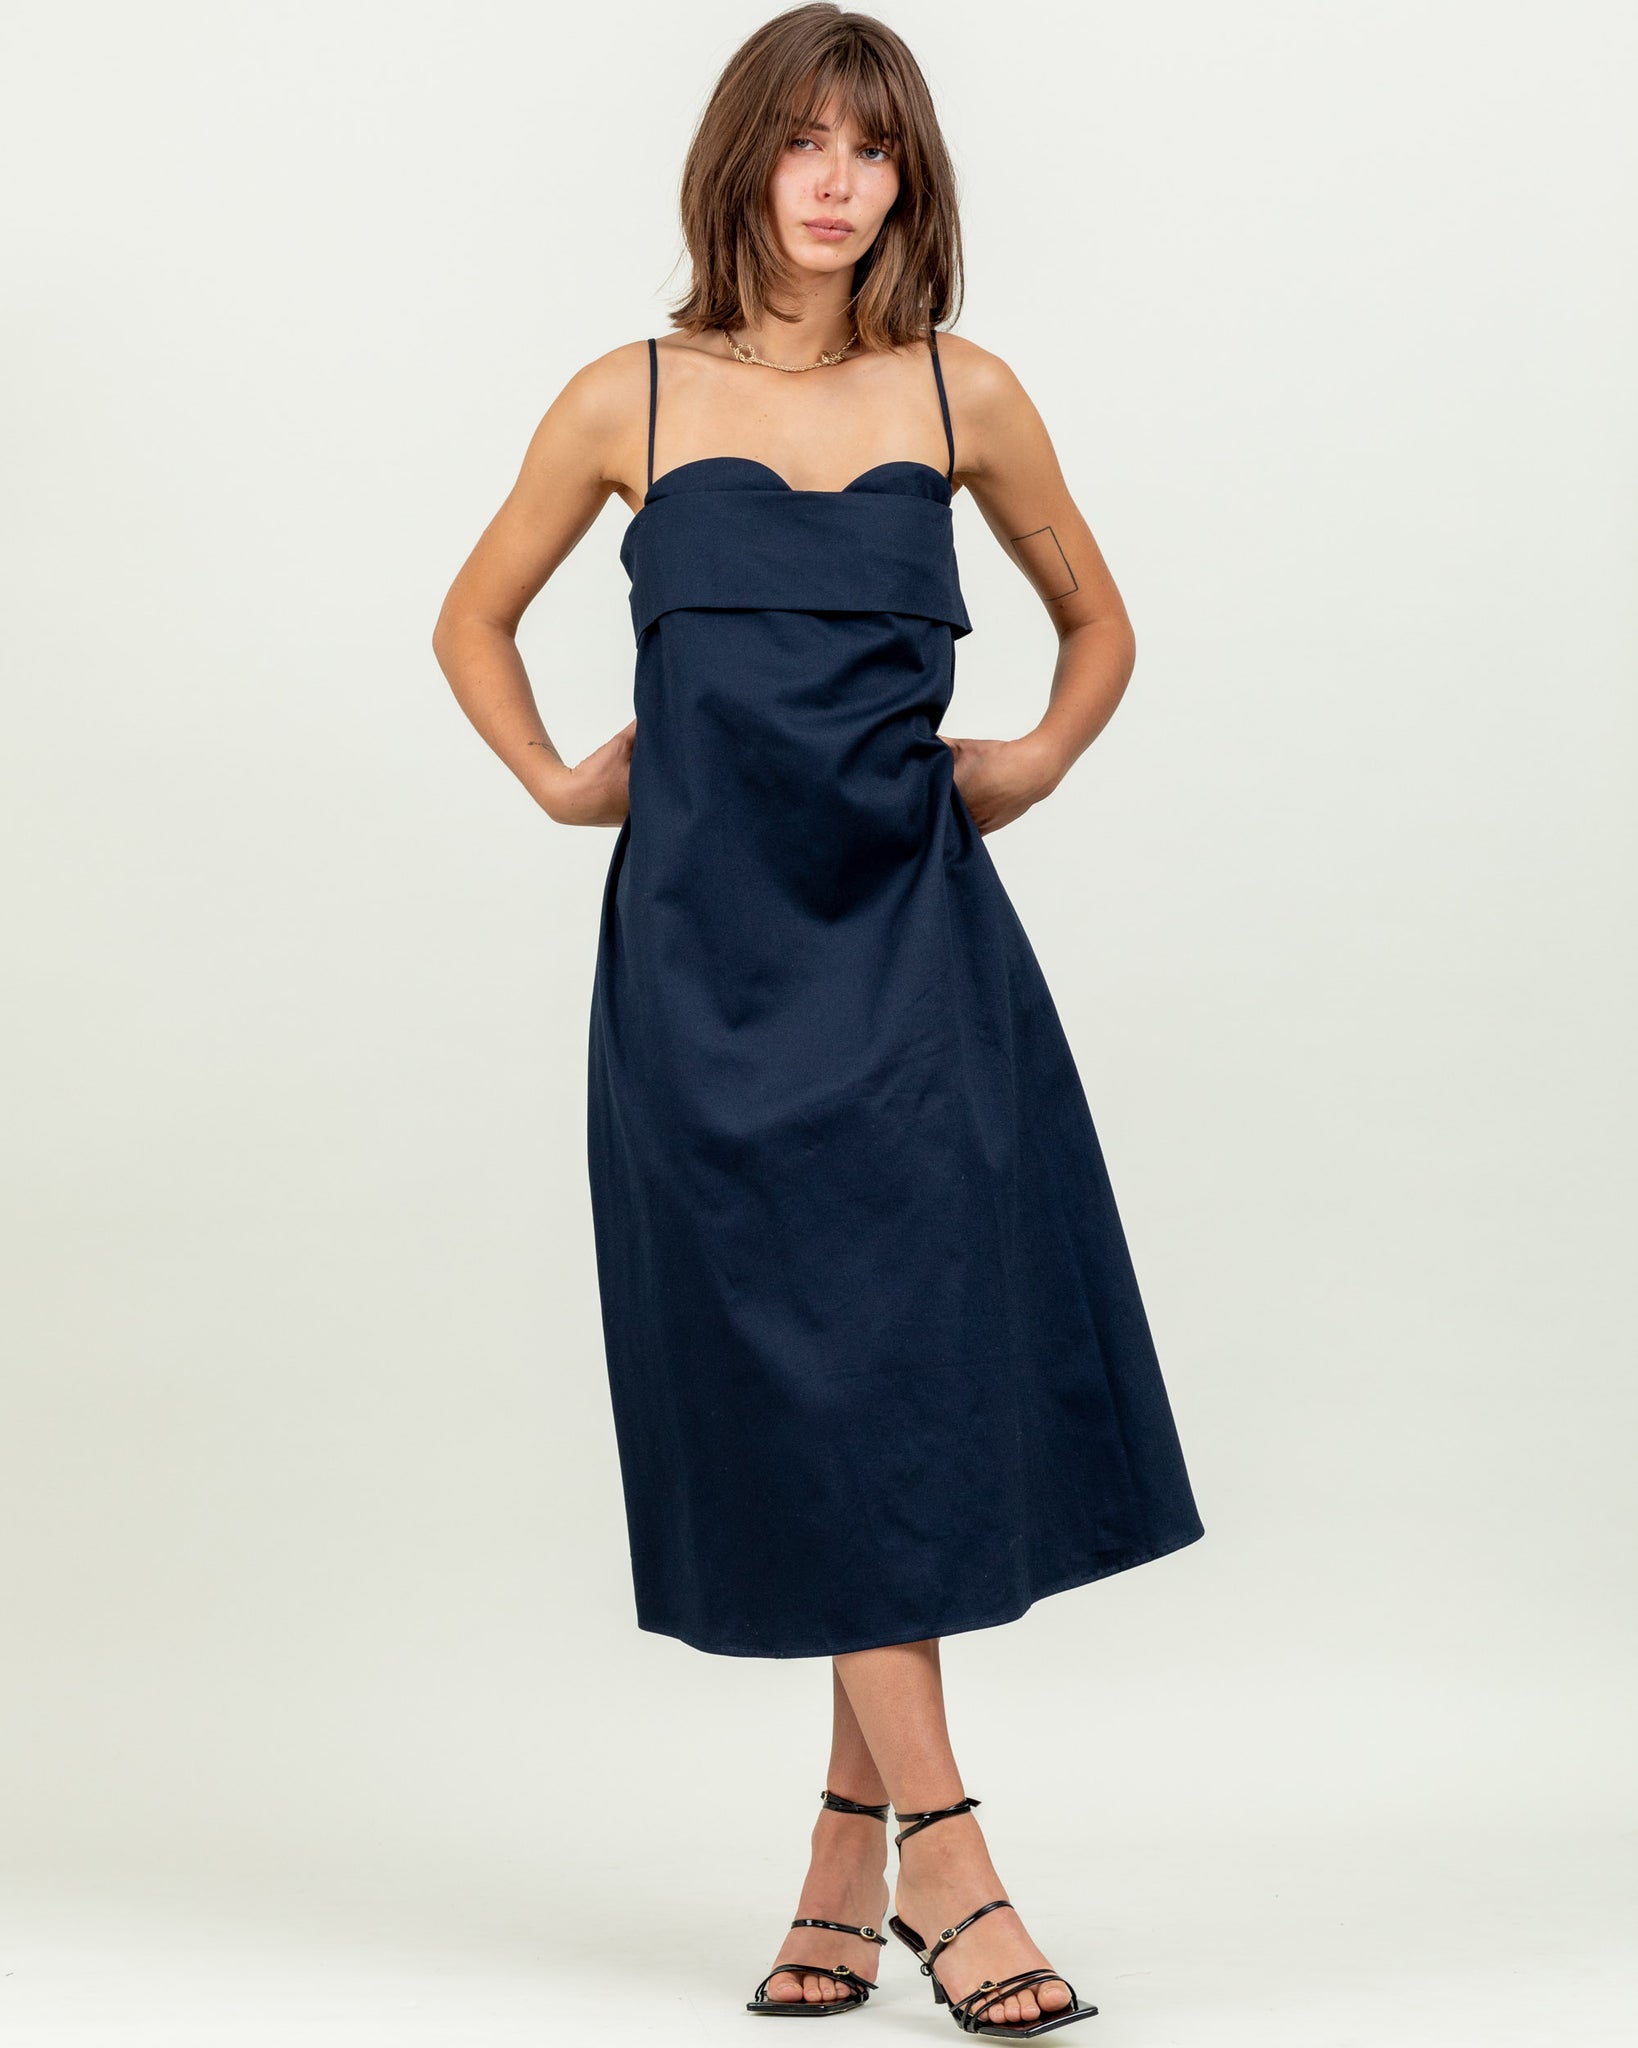 Verona Dress 2.0 Organic Twill